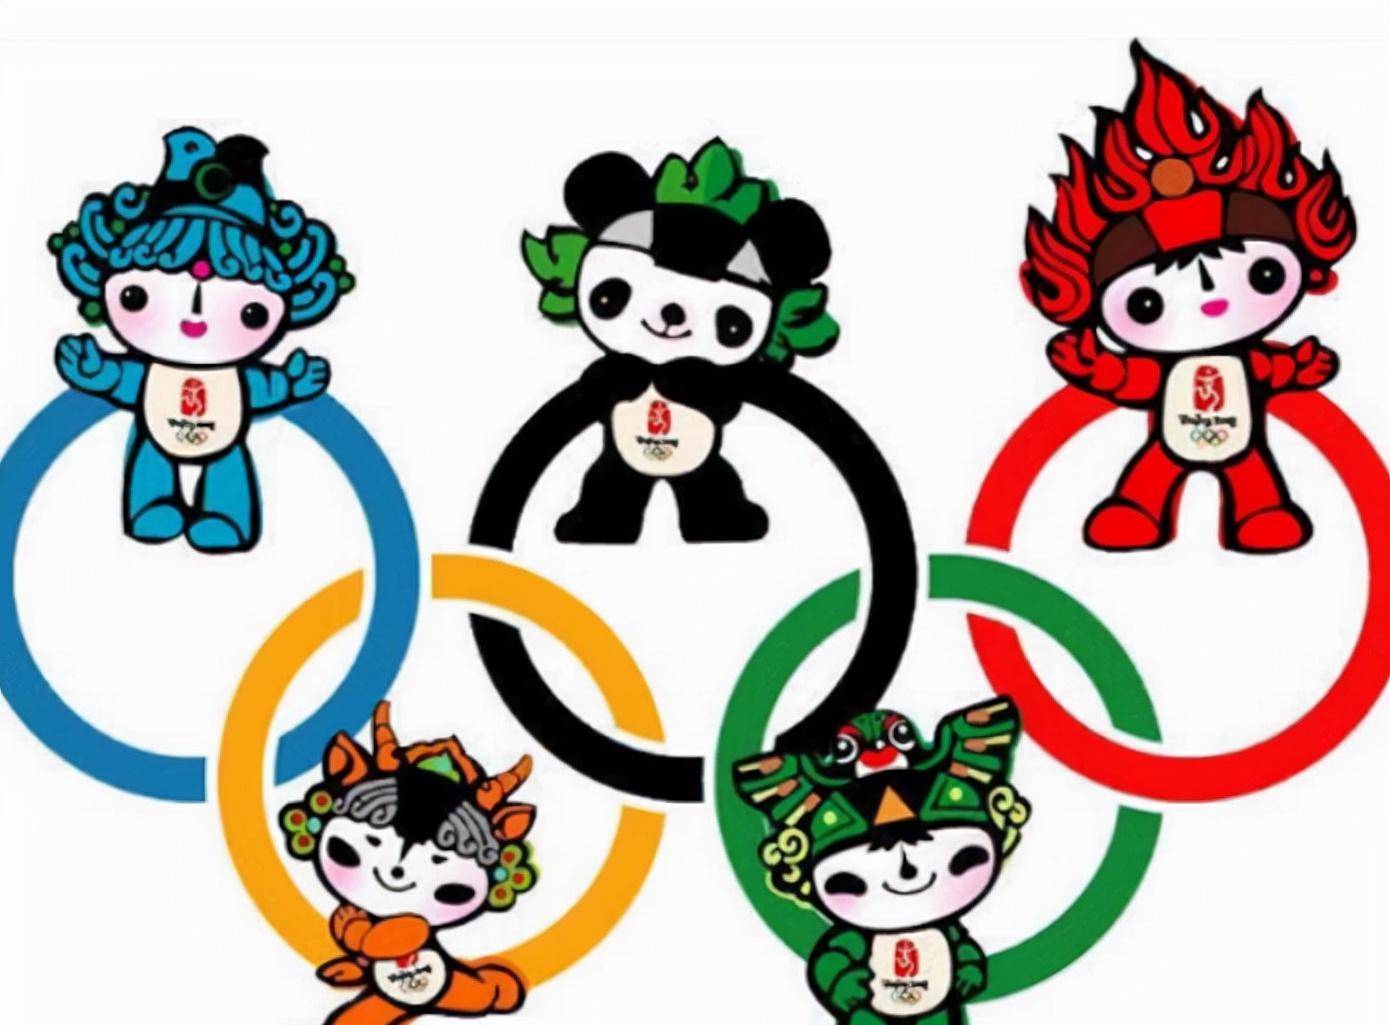 北京奥运会的画运动员图片